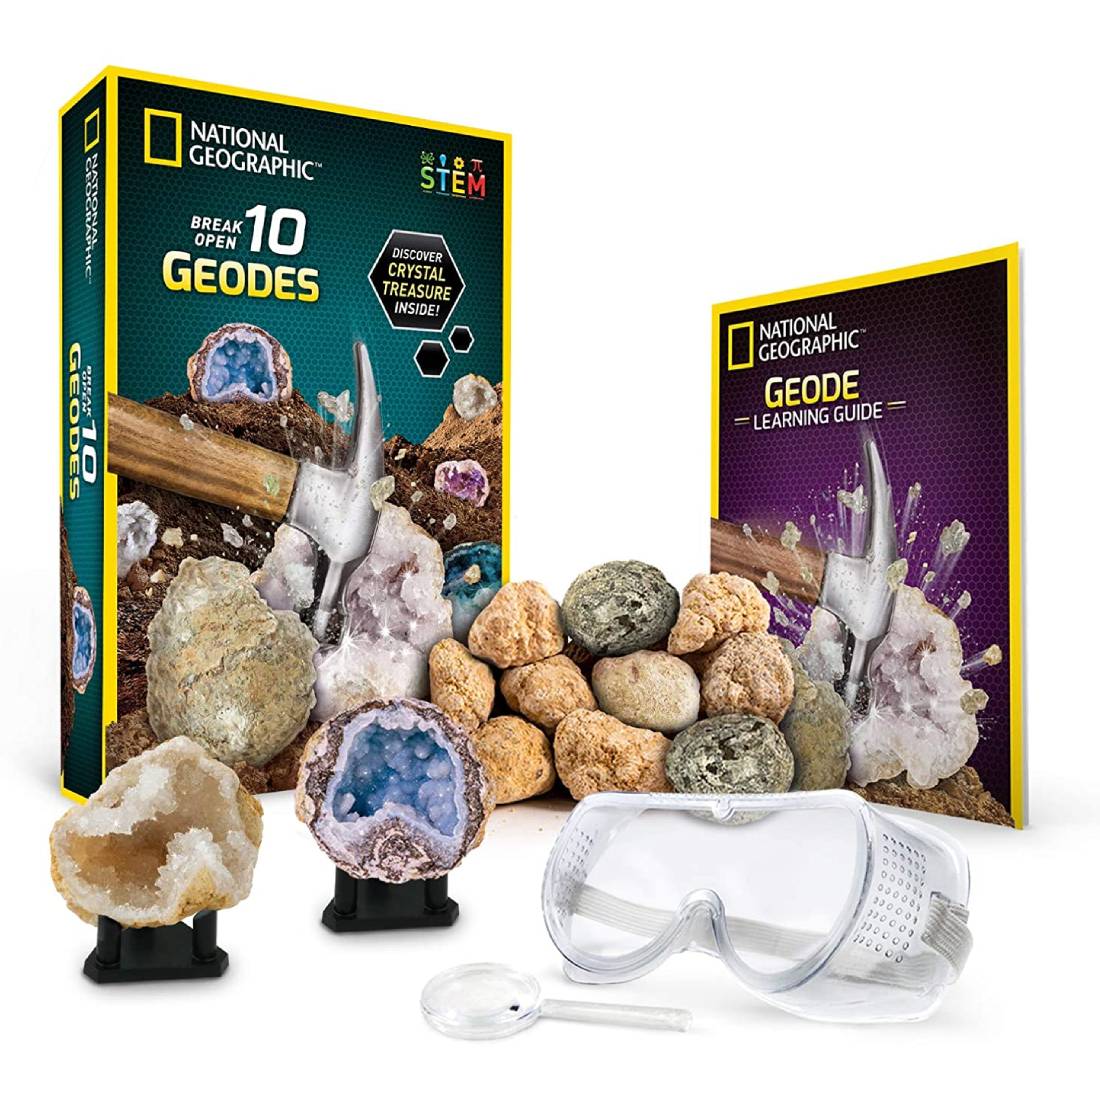 NATIONAL GEOGRAPHIC Kit de ciencia para abrir 10 geodas y explorar cristales